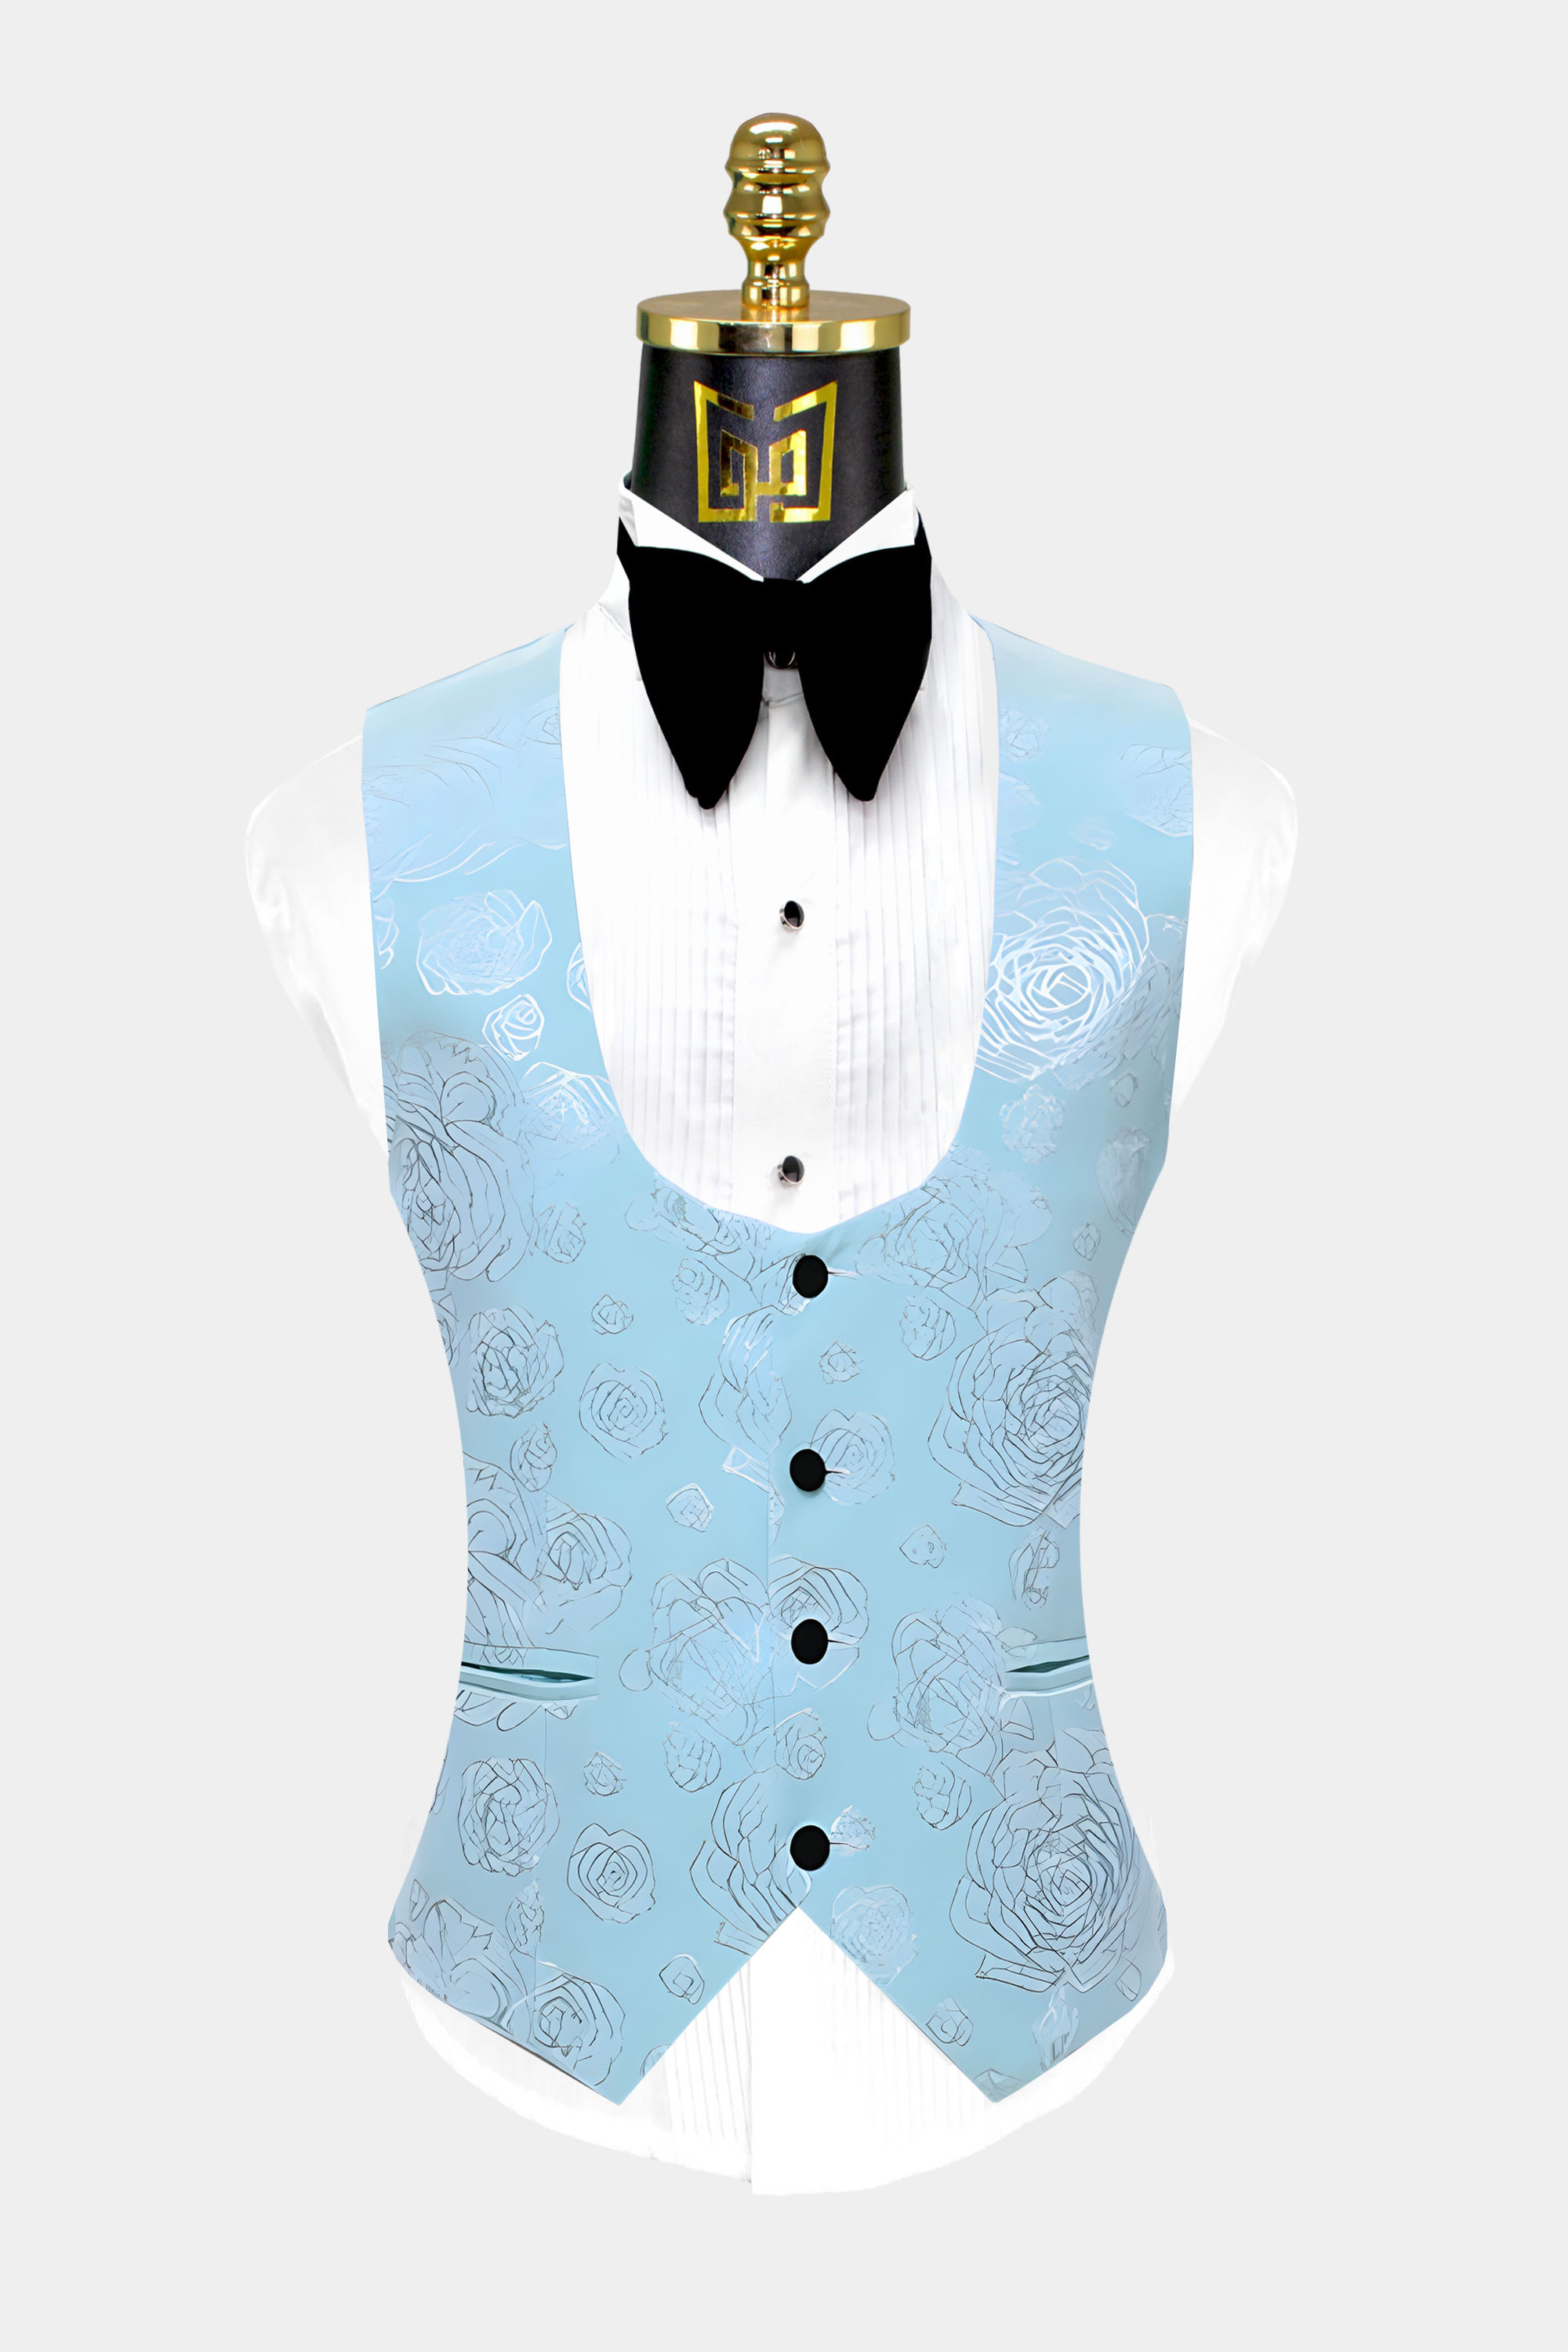 Turquoise-Tuxedo-Vest-from-Gentlemansguru.com